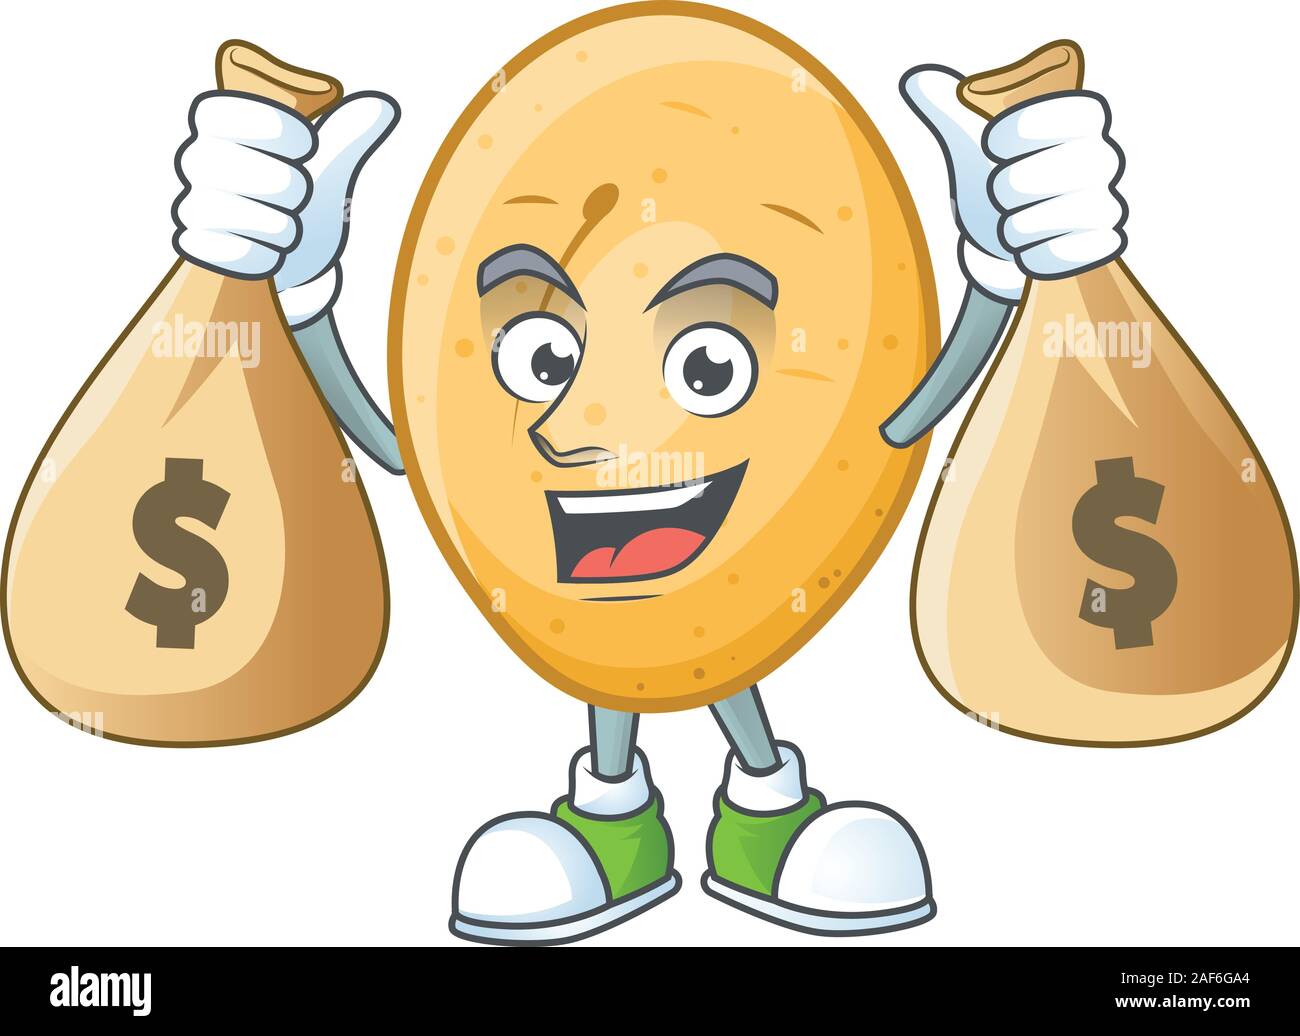 Happy Kartoffel Zeichentrickfigur mit zwei Beutel Stock Vektor